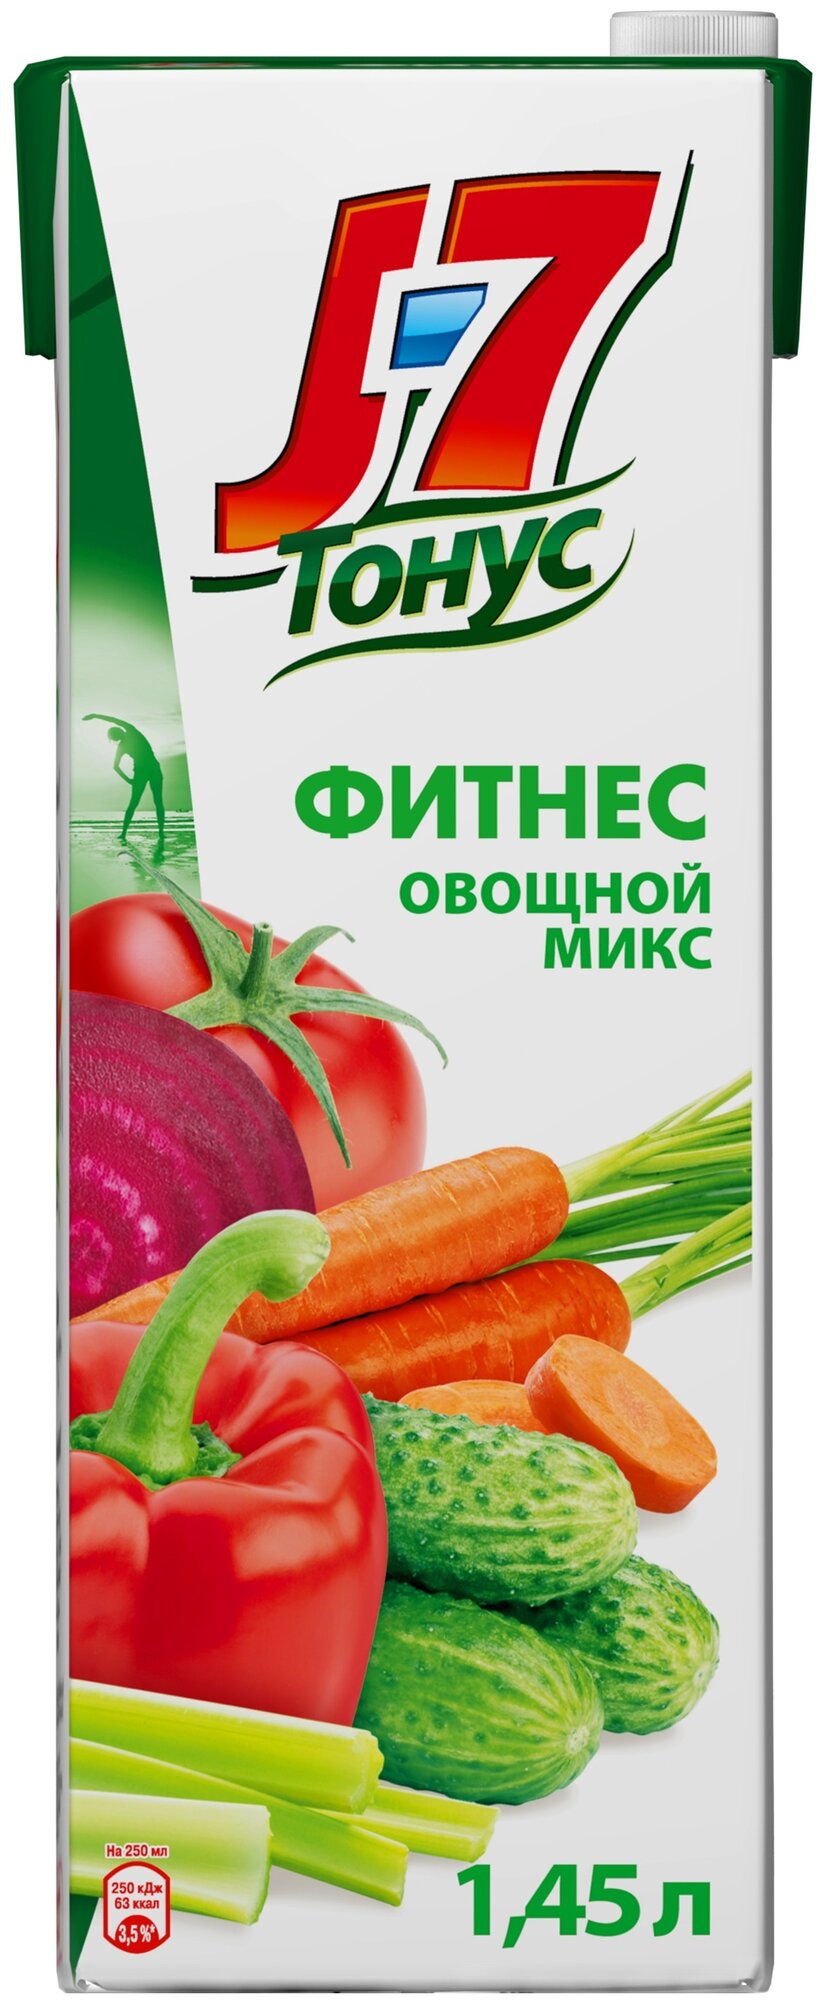 Напиток сокосодержащий J-7 Тонус Смесь овощей 1,45 л(товар продается поштучно) - фотография № 1